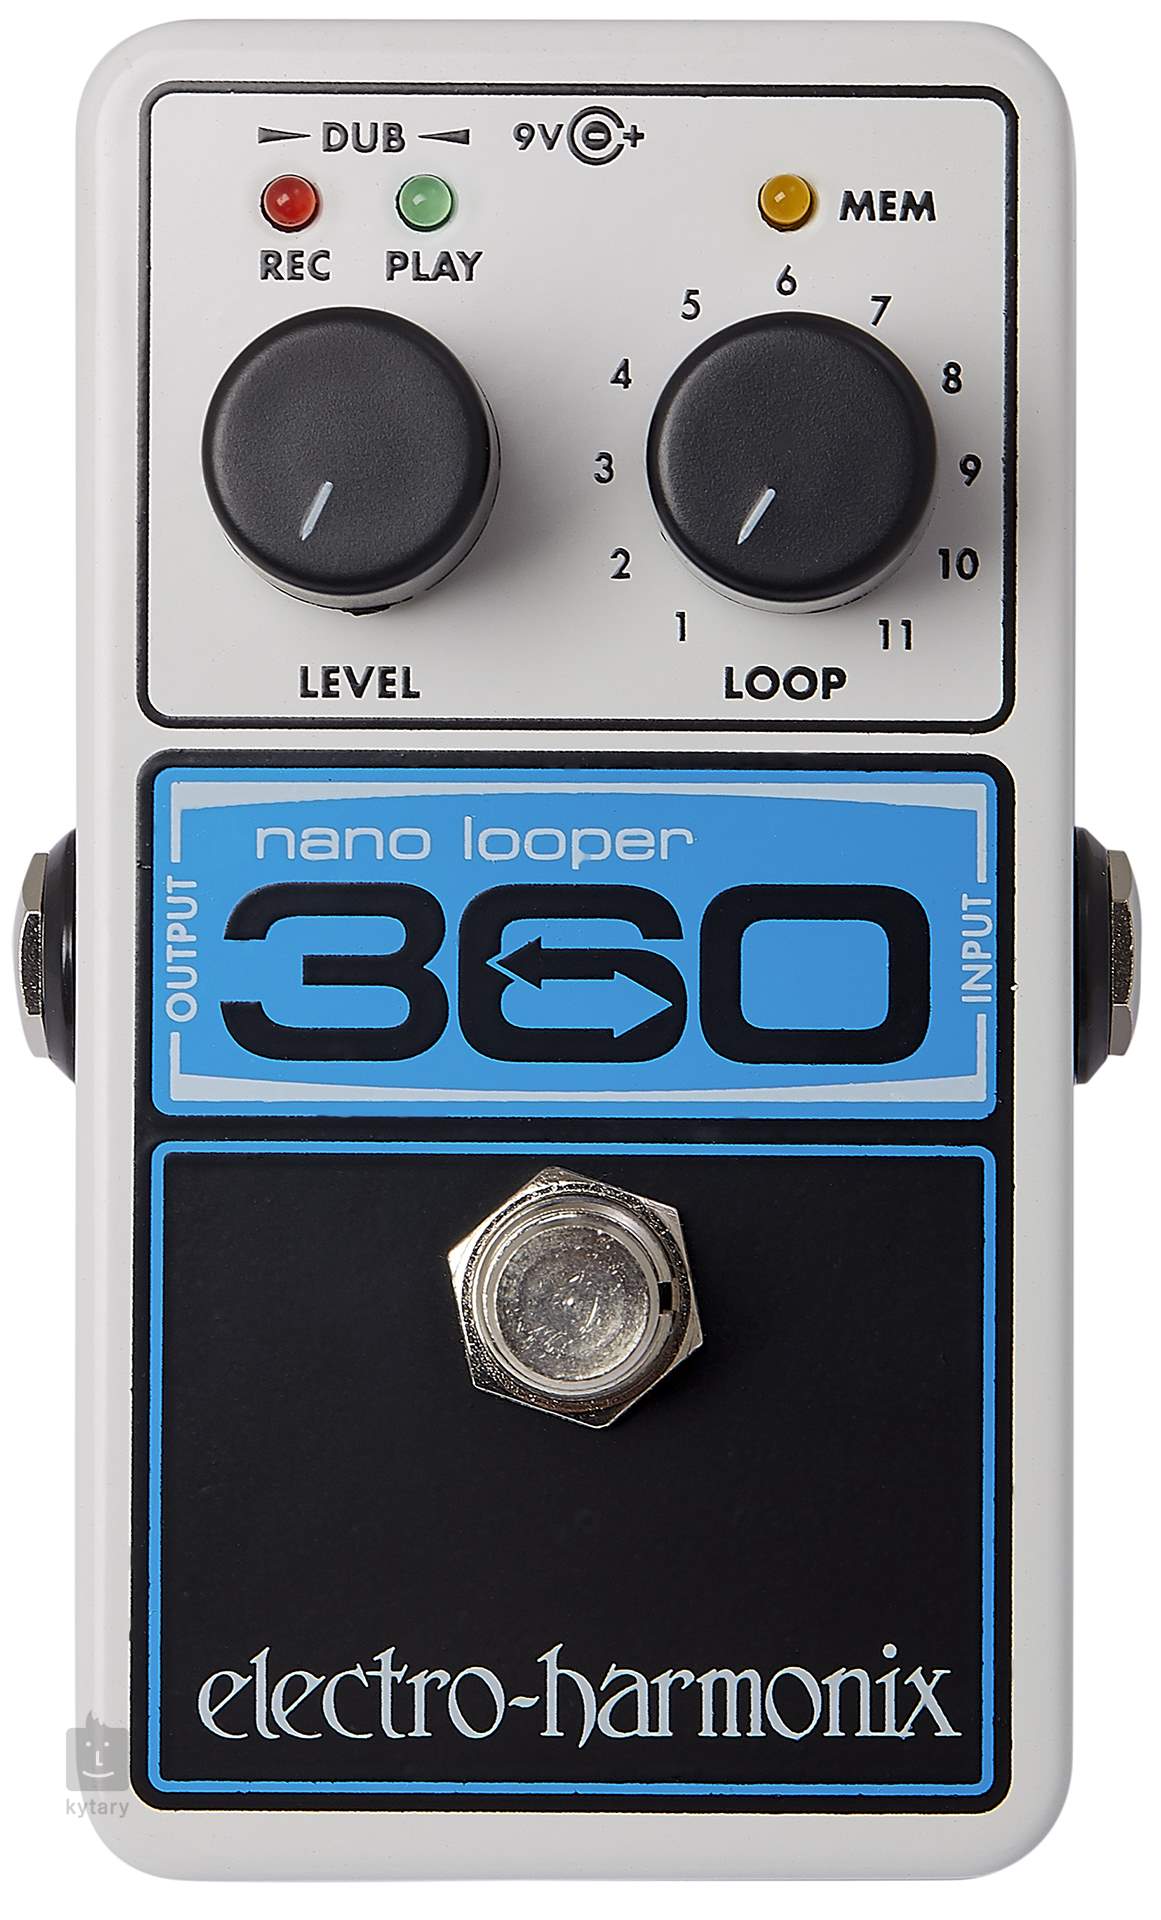 ELECTRO-HARMONIX 360 NANO LOOPER Guitar Looper